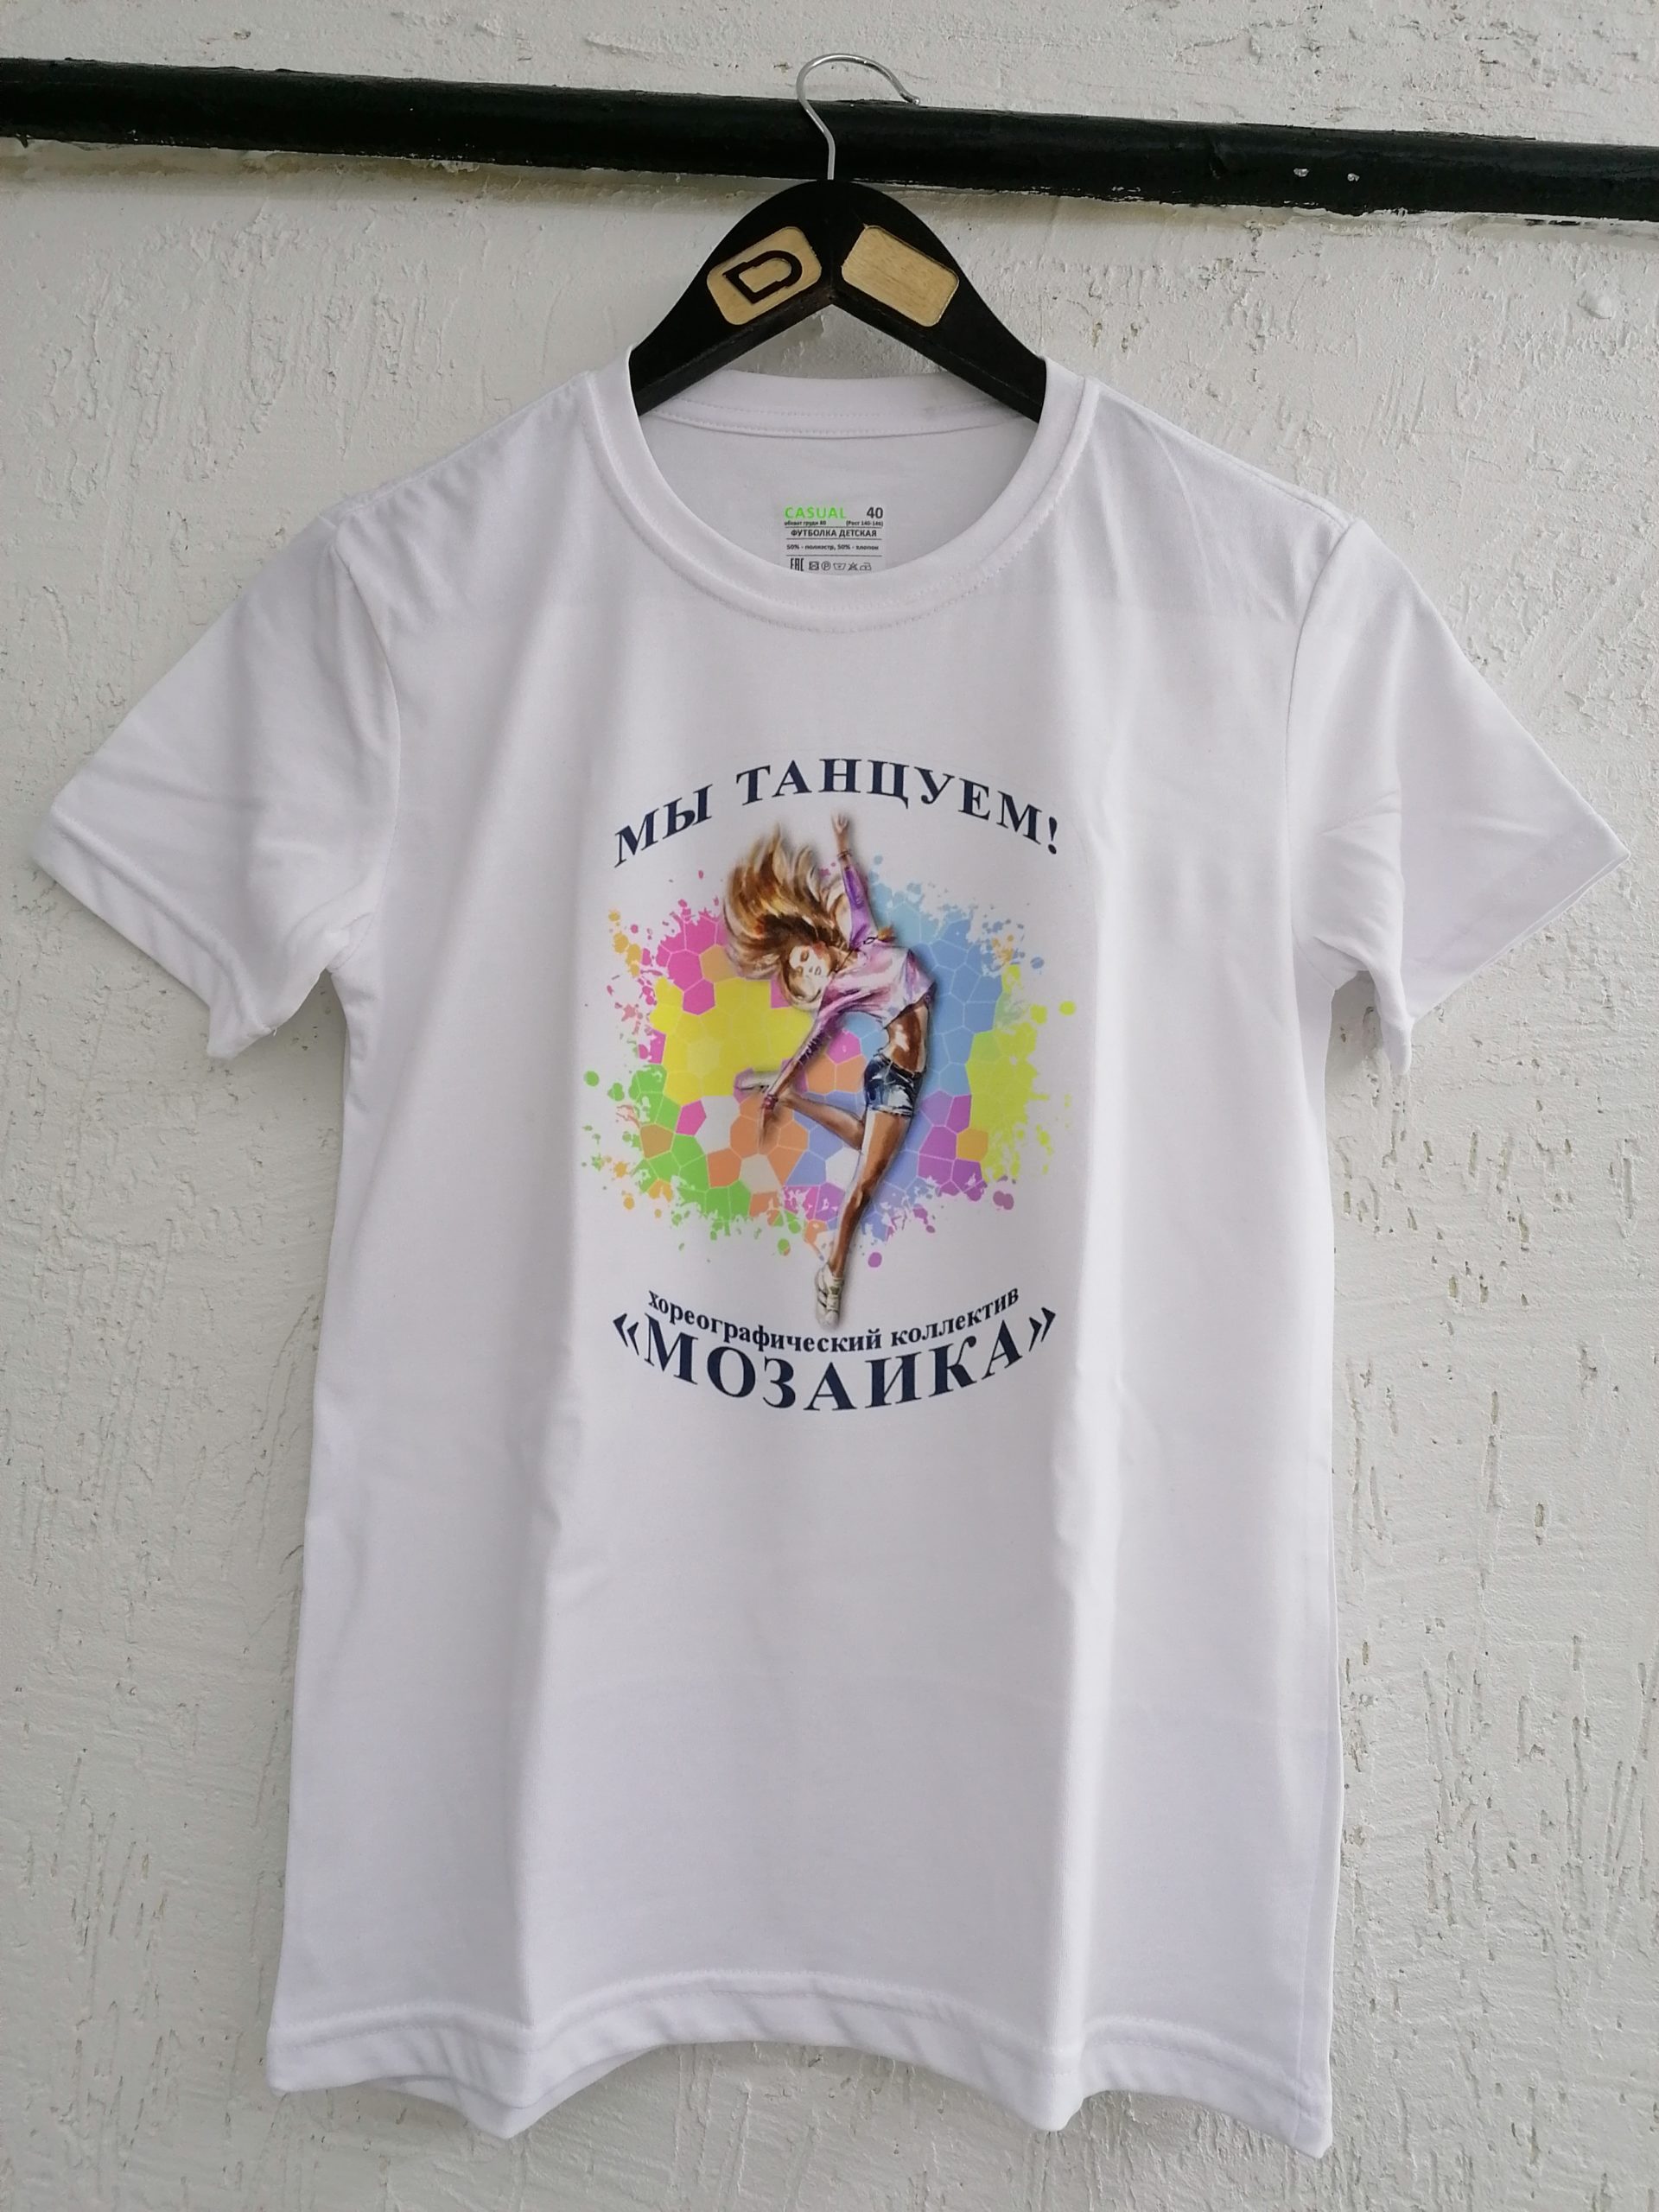 белая хлопковая футболка с надписью "Мы танцуем" и ярким принтом сделанным на DTF